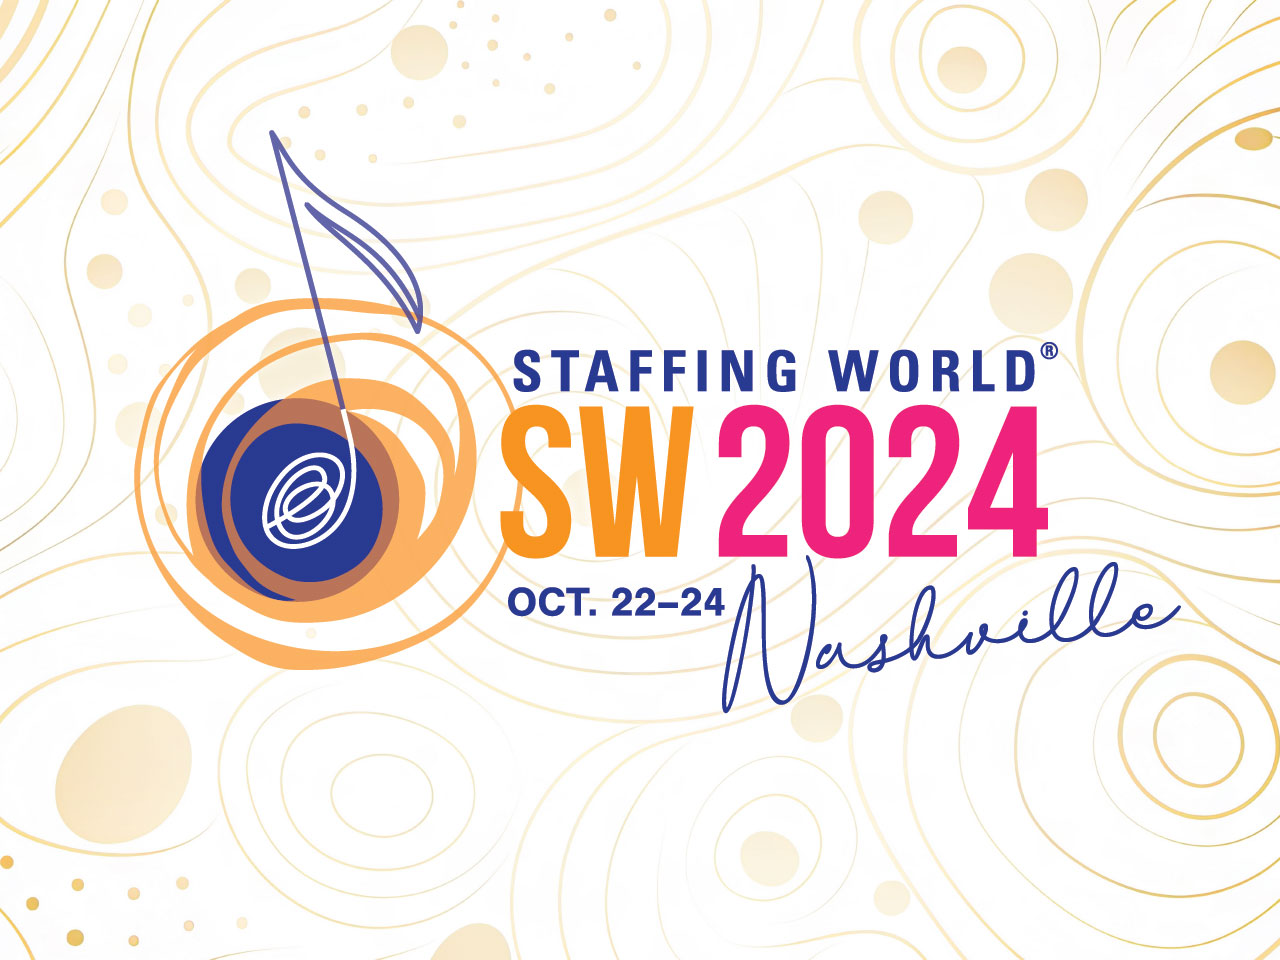 Staffing World 2024